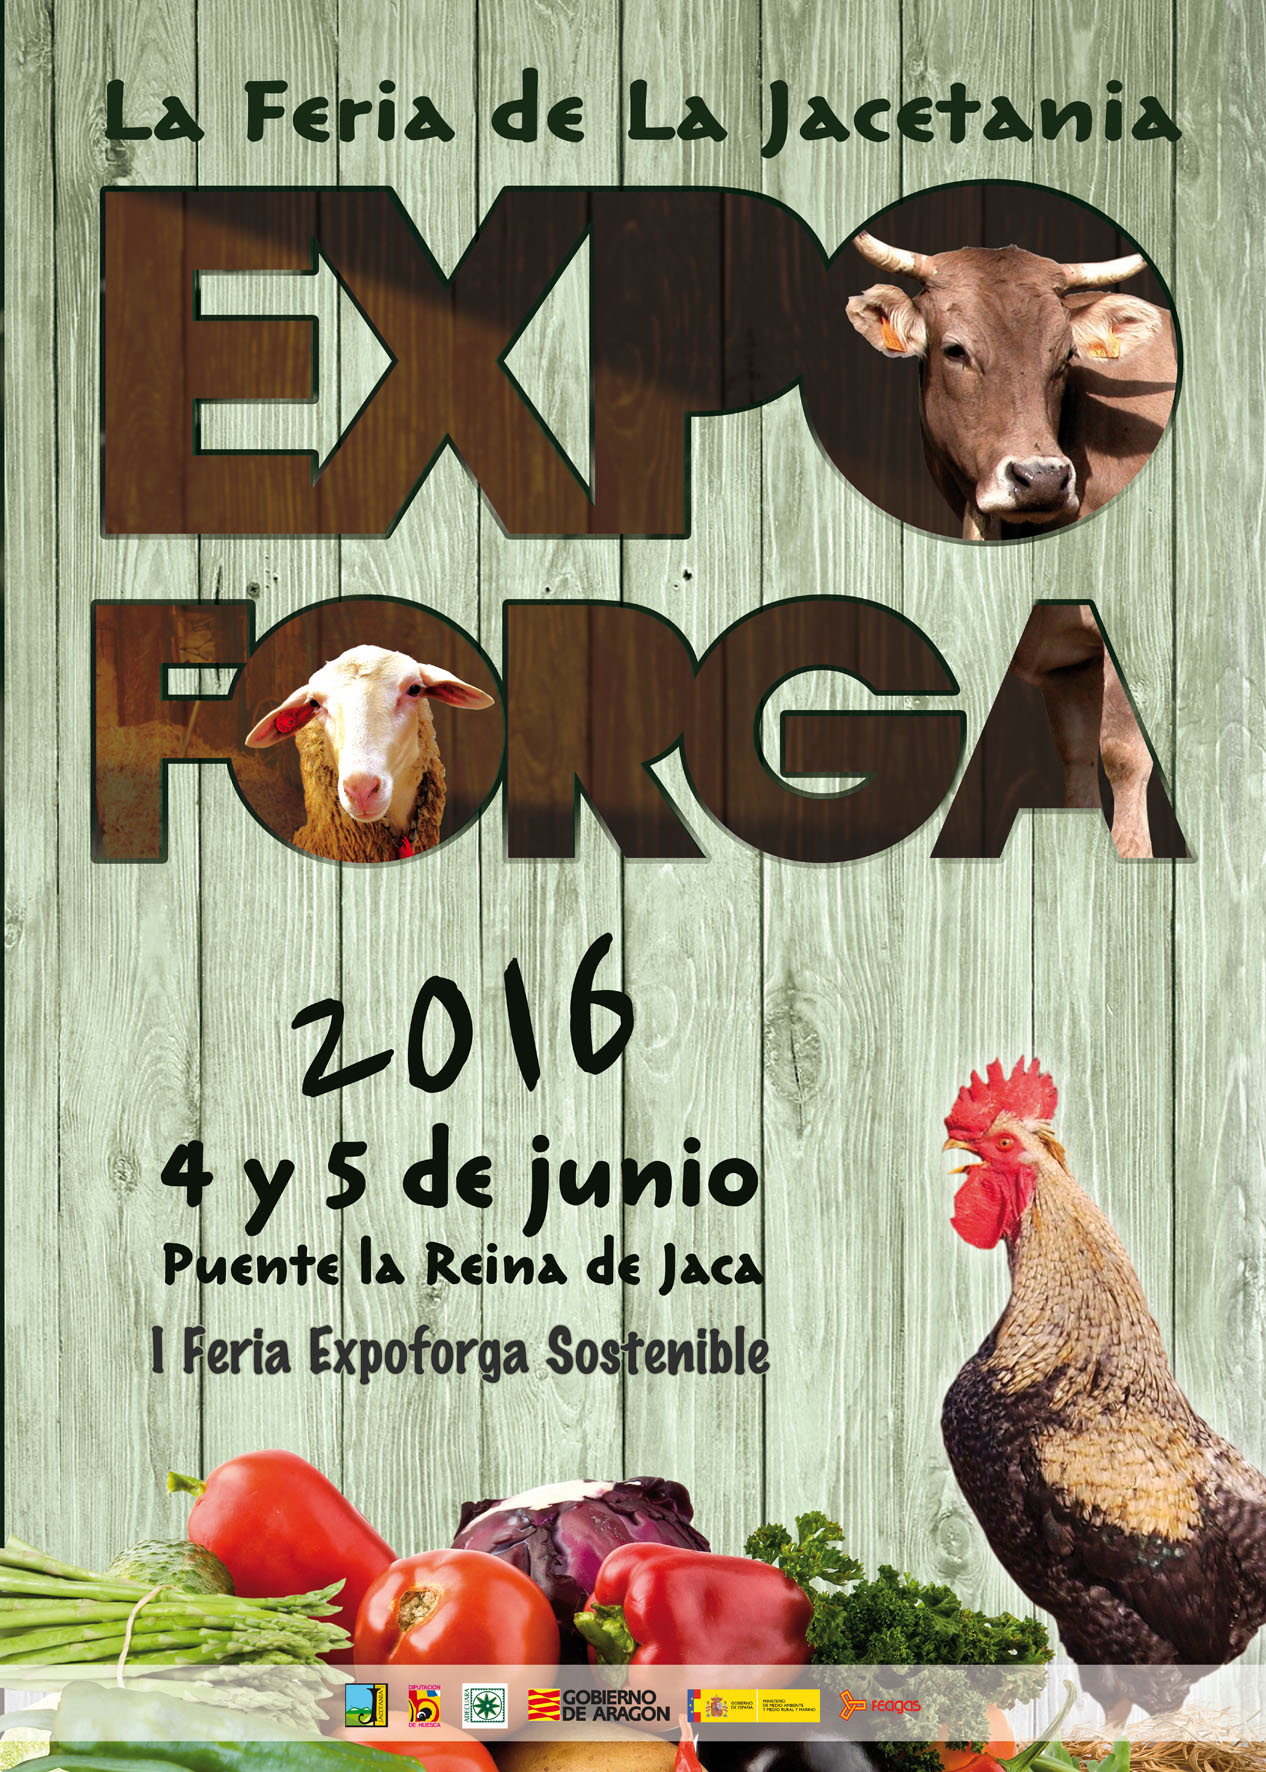 XXVIII Expoforga de Puente la Reina de Jaca,Huesca – 4 y 5 de Junio del 2016.